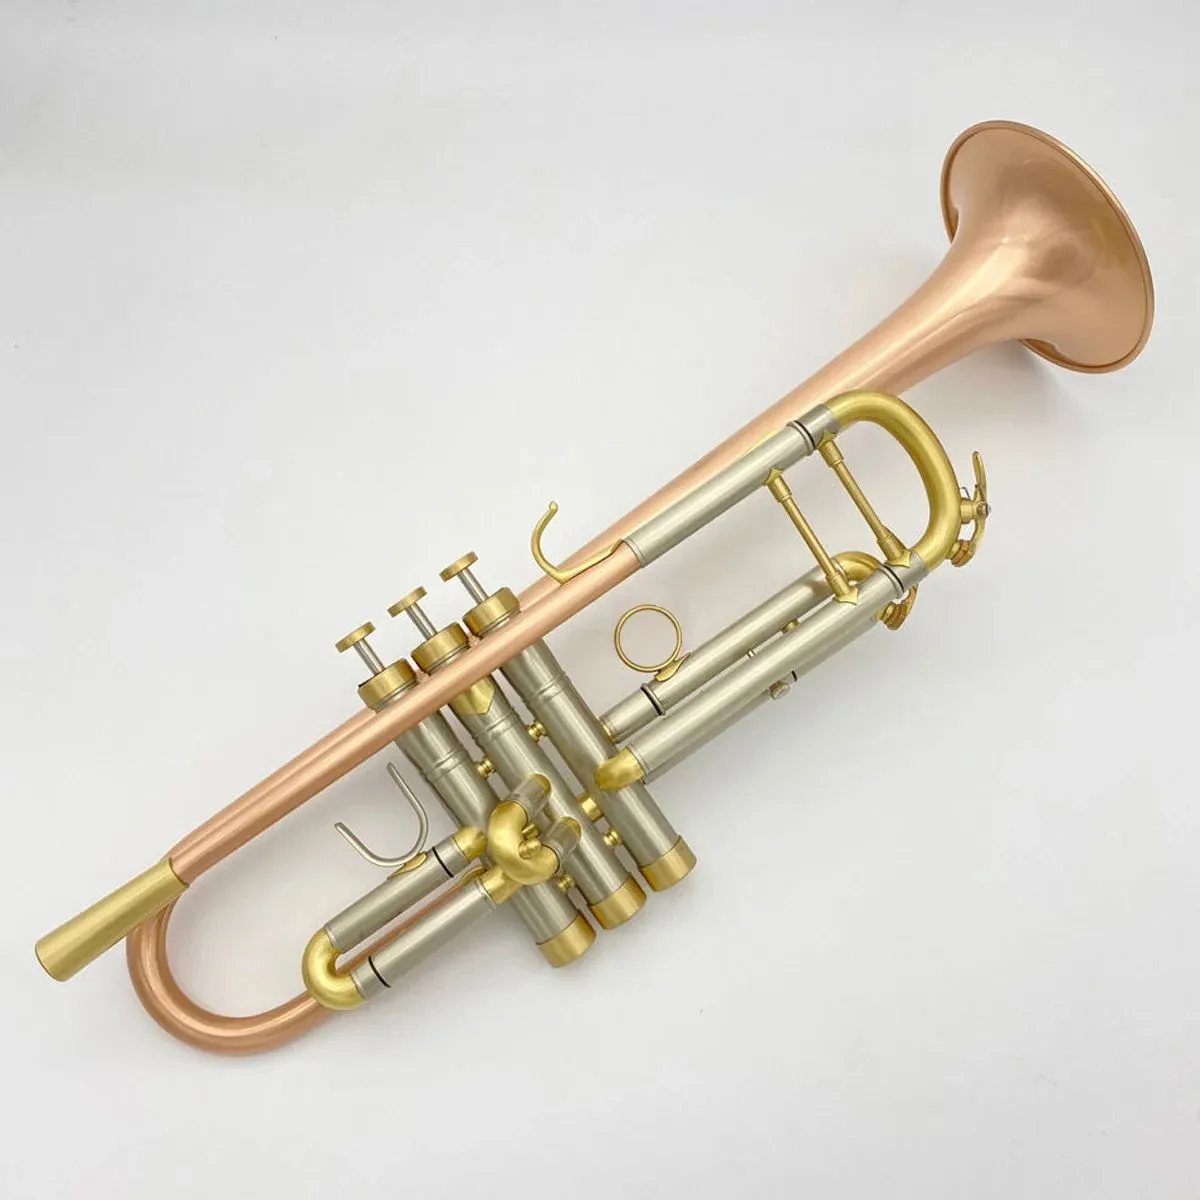 Strumento musicale tromba di fascia alta modello di marca americana, il bronzo fosforoso spazzolato amplifica la qualità del suono e la tromba spessa